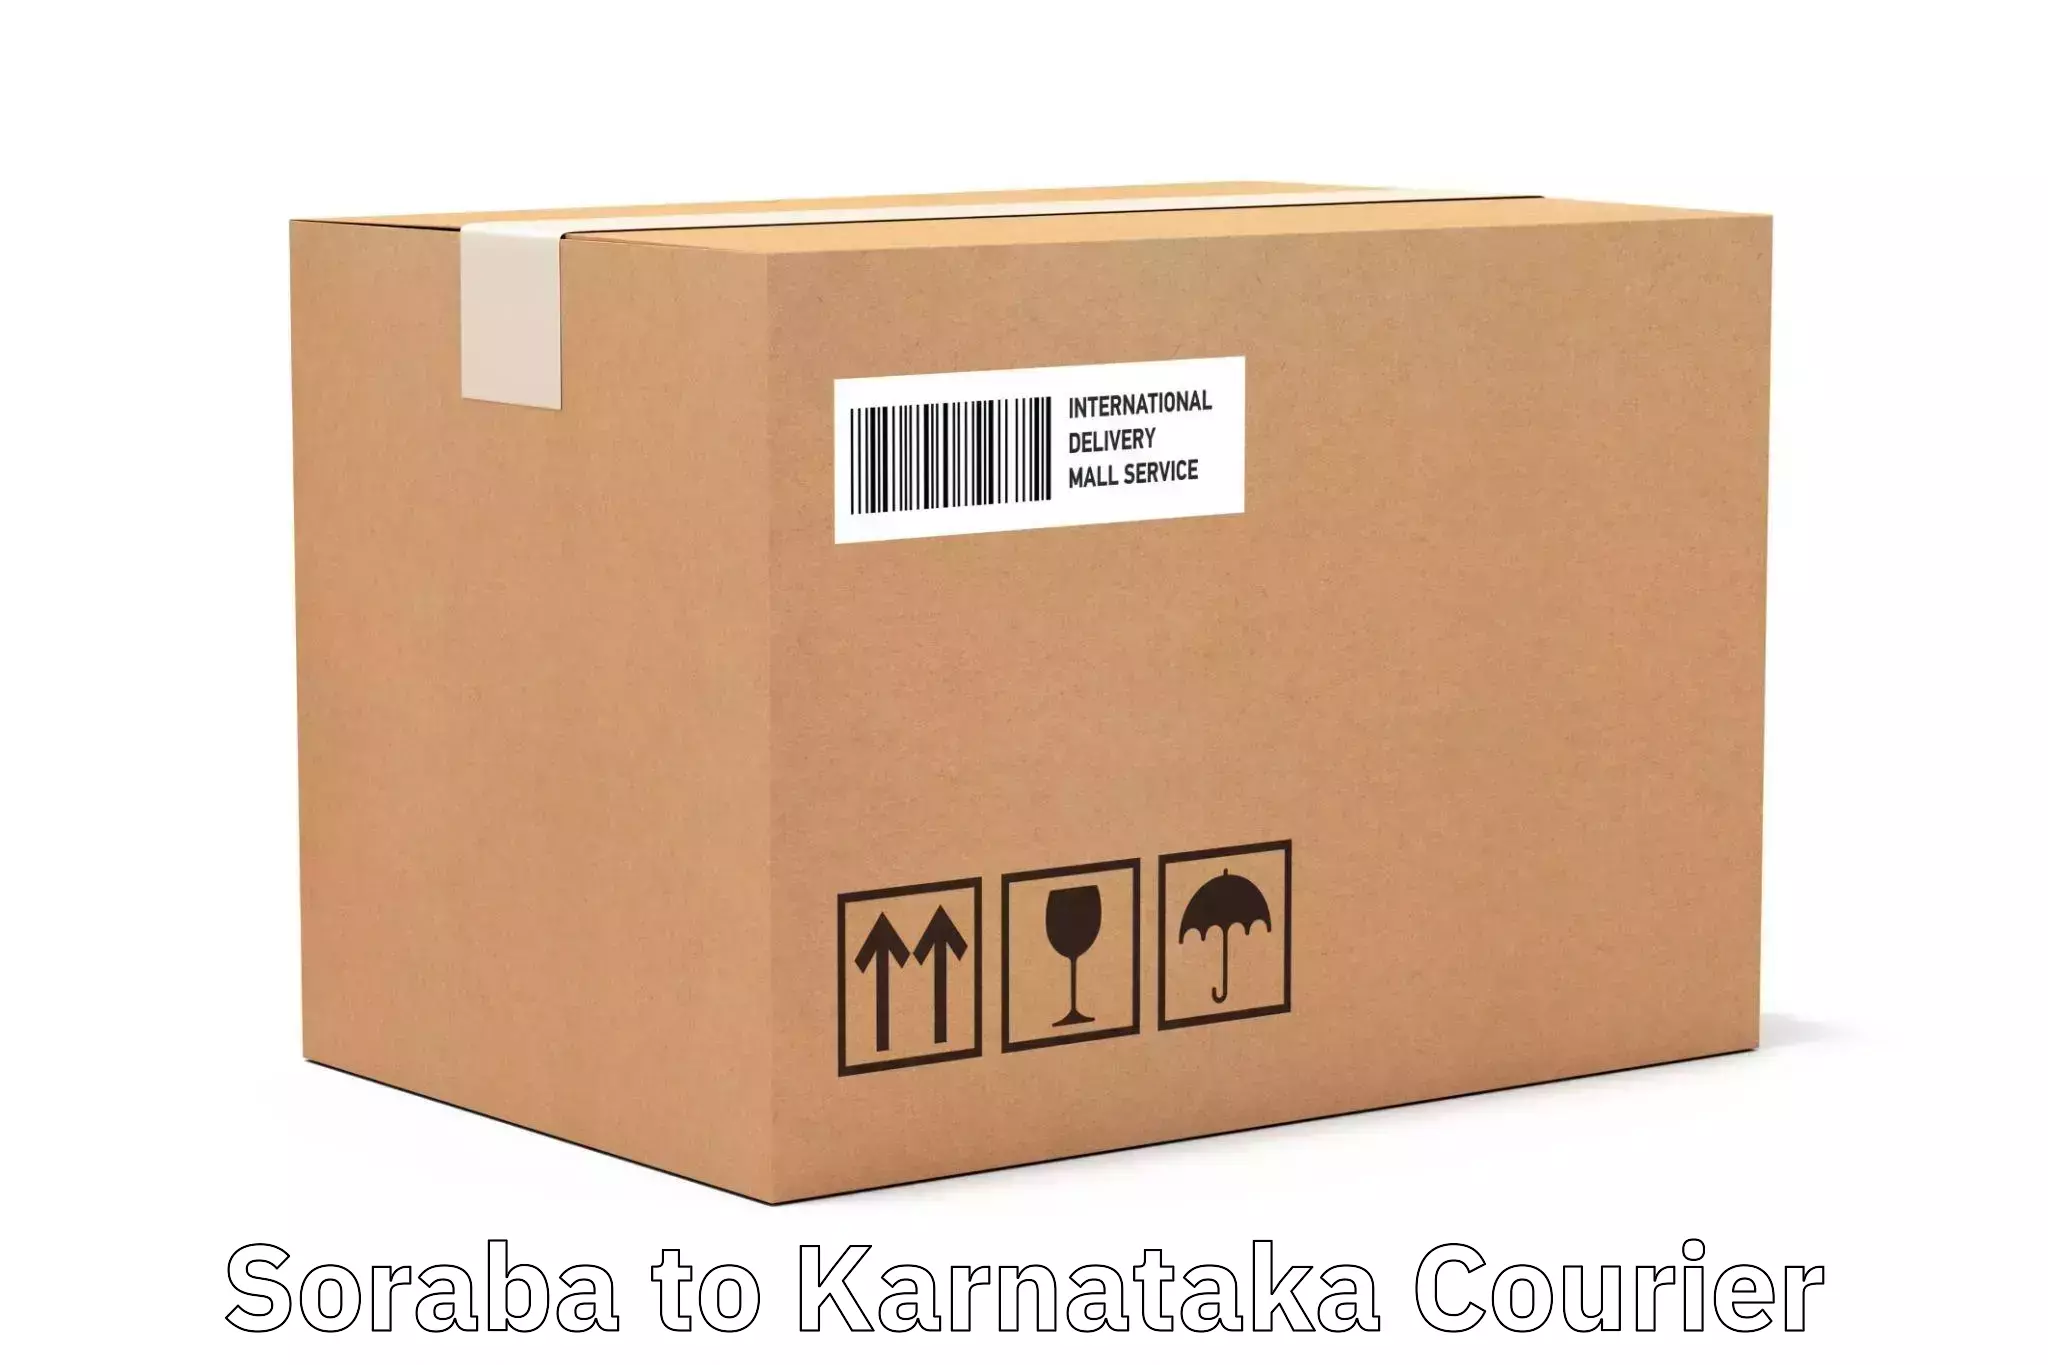 High-capacity shipping options Soraba to Banavara